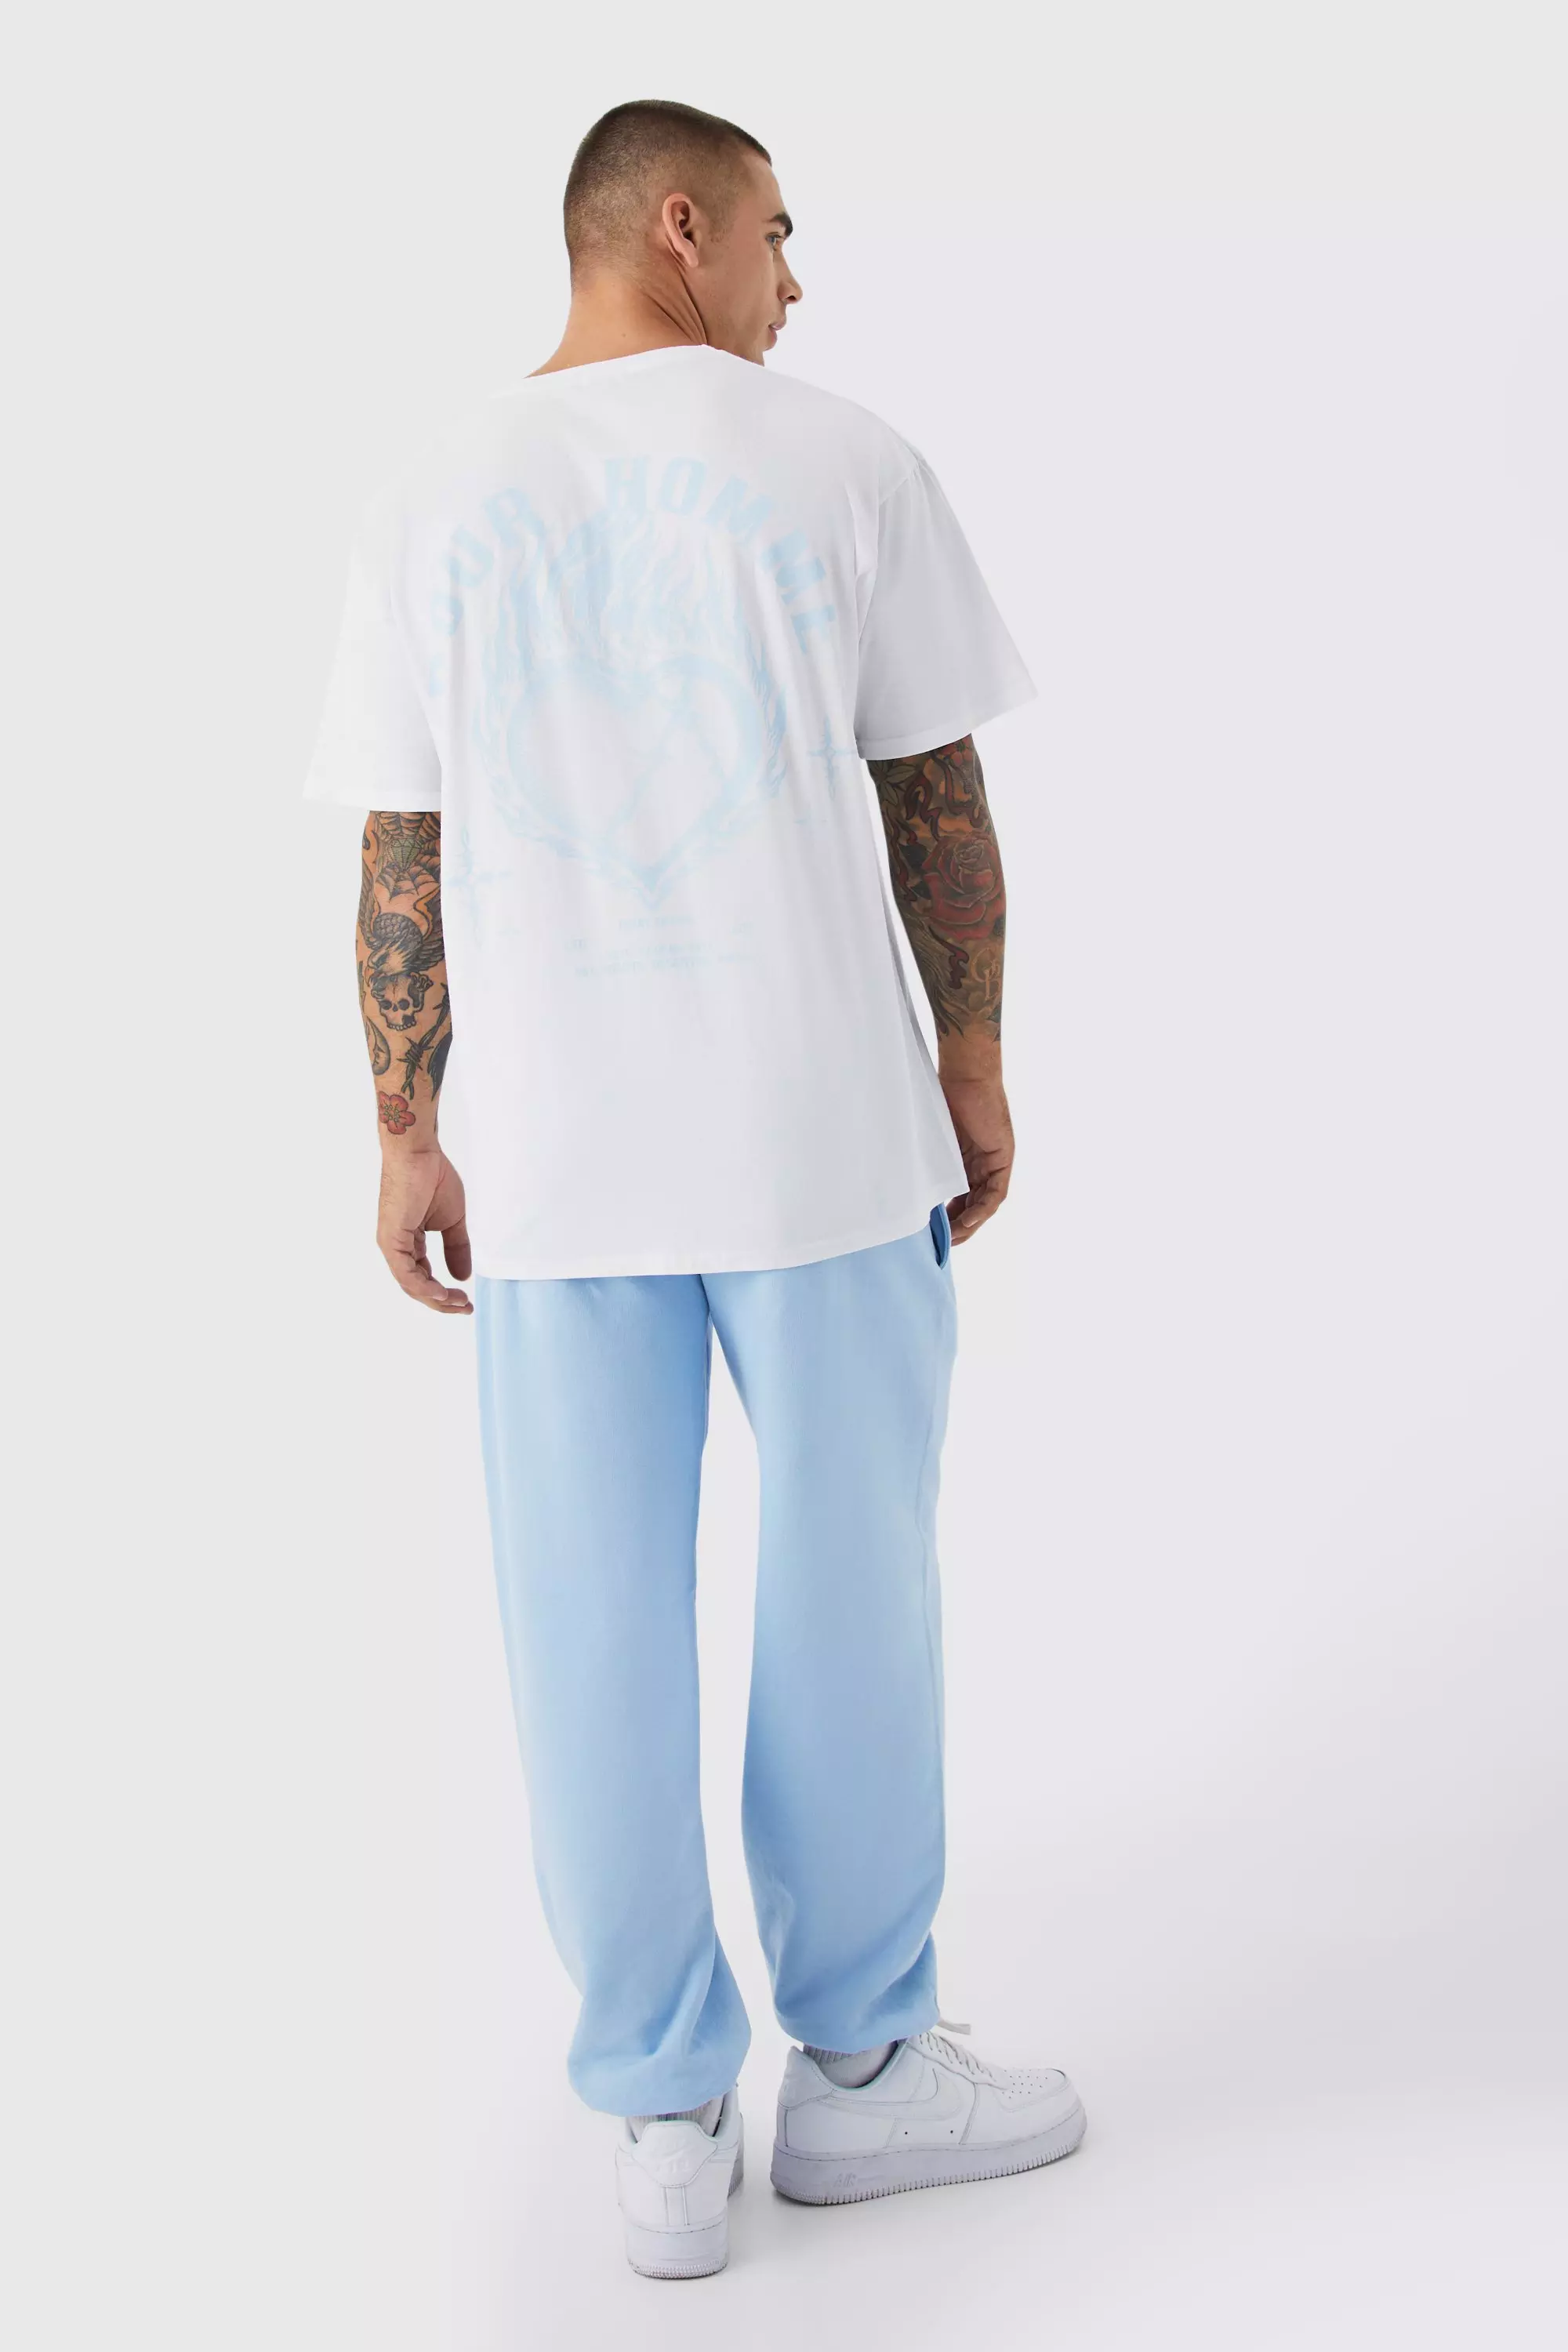 Blue Oversized Pour Homme T-shirt & Sweatpants Set